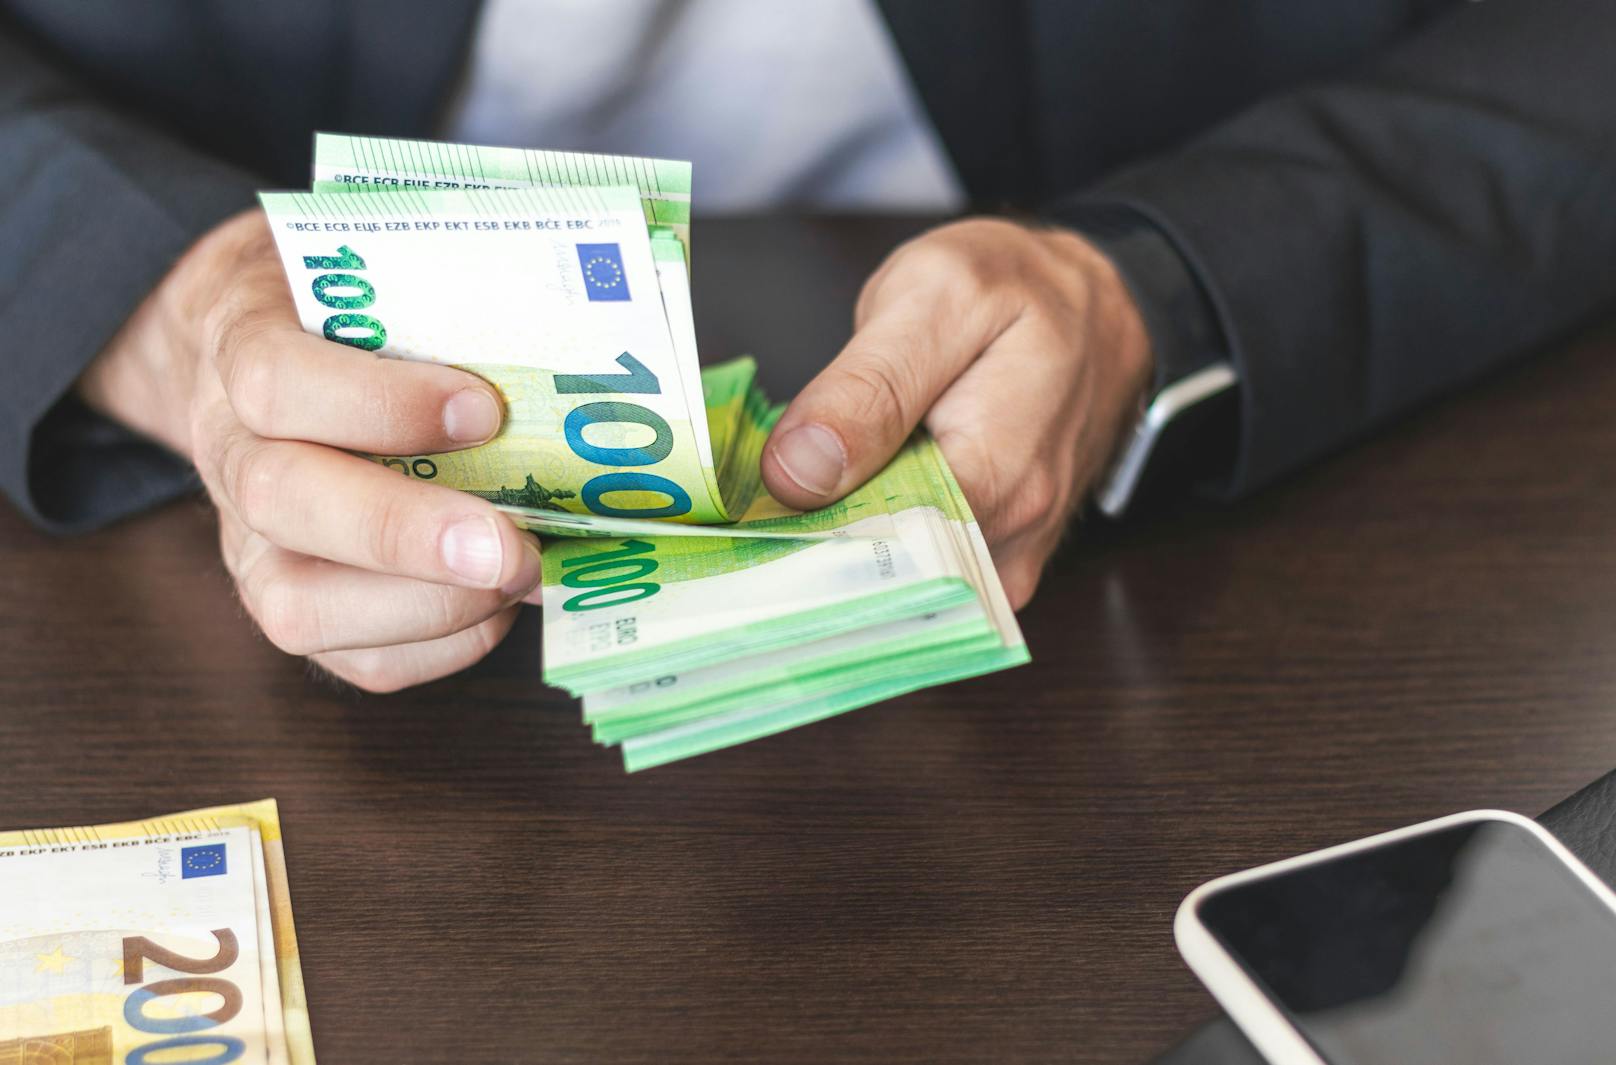 100 Euro pro Monat – neuer "Vollzeit-Bonus" im Gespräch